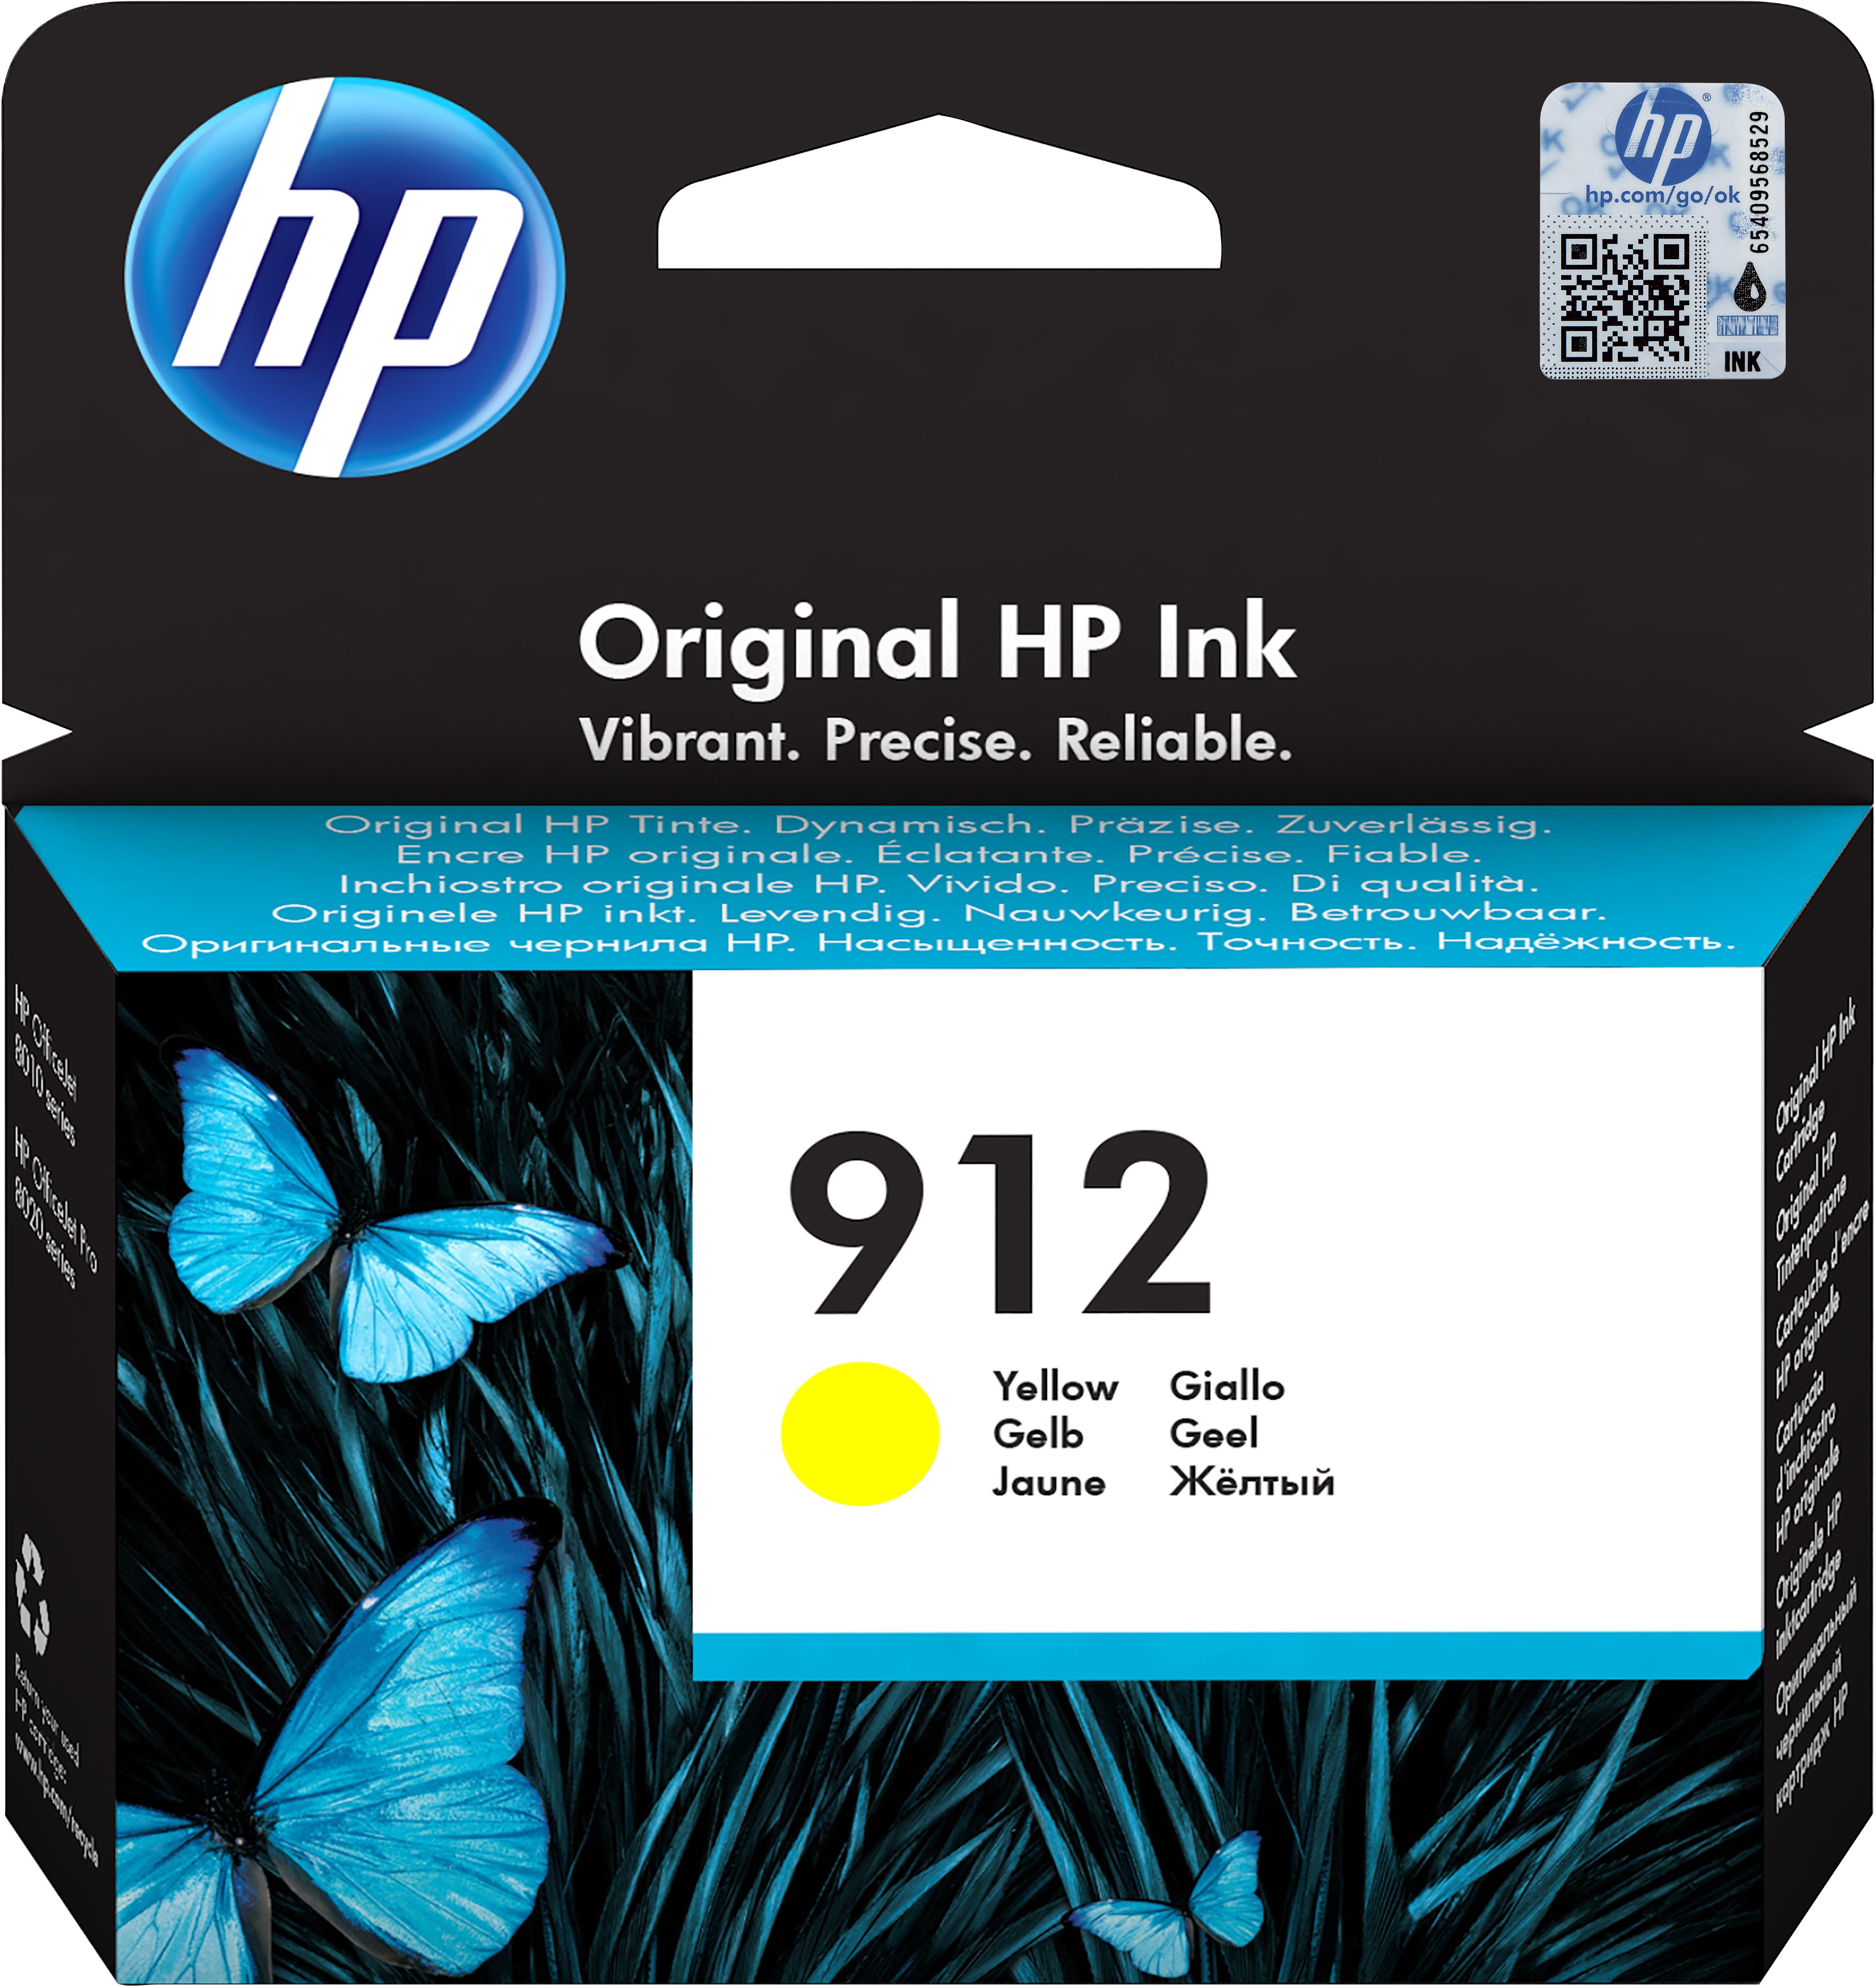 HP 912 cartridge Yellow Inkt Geel